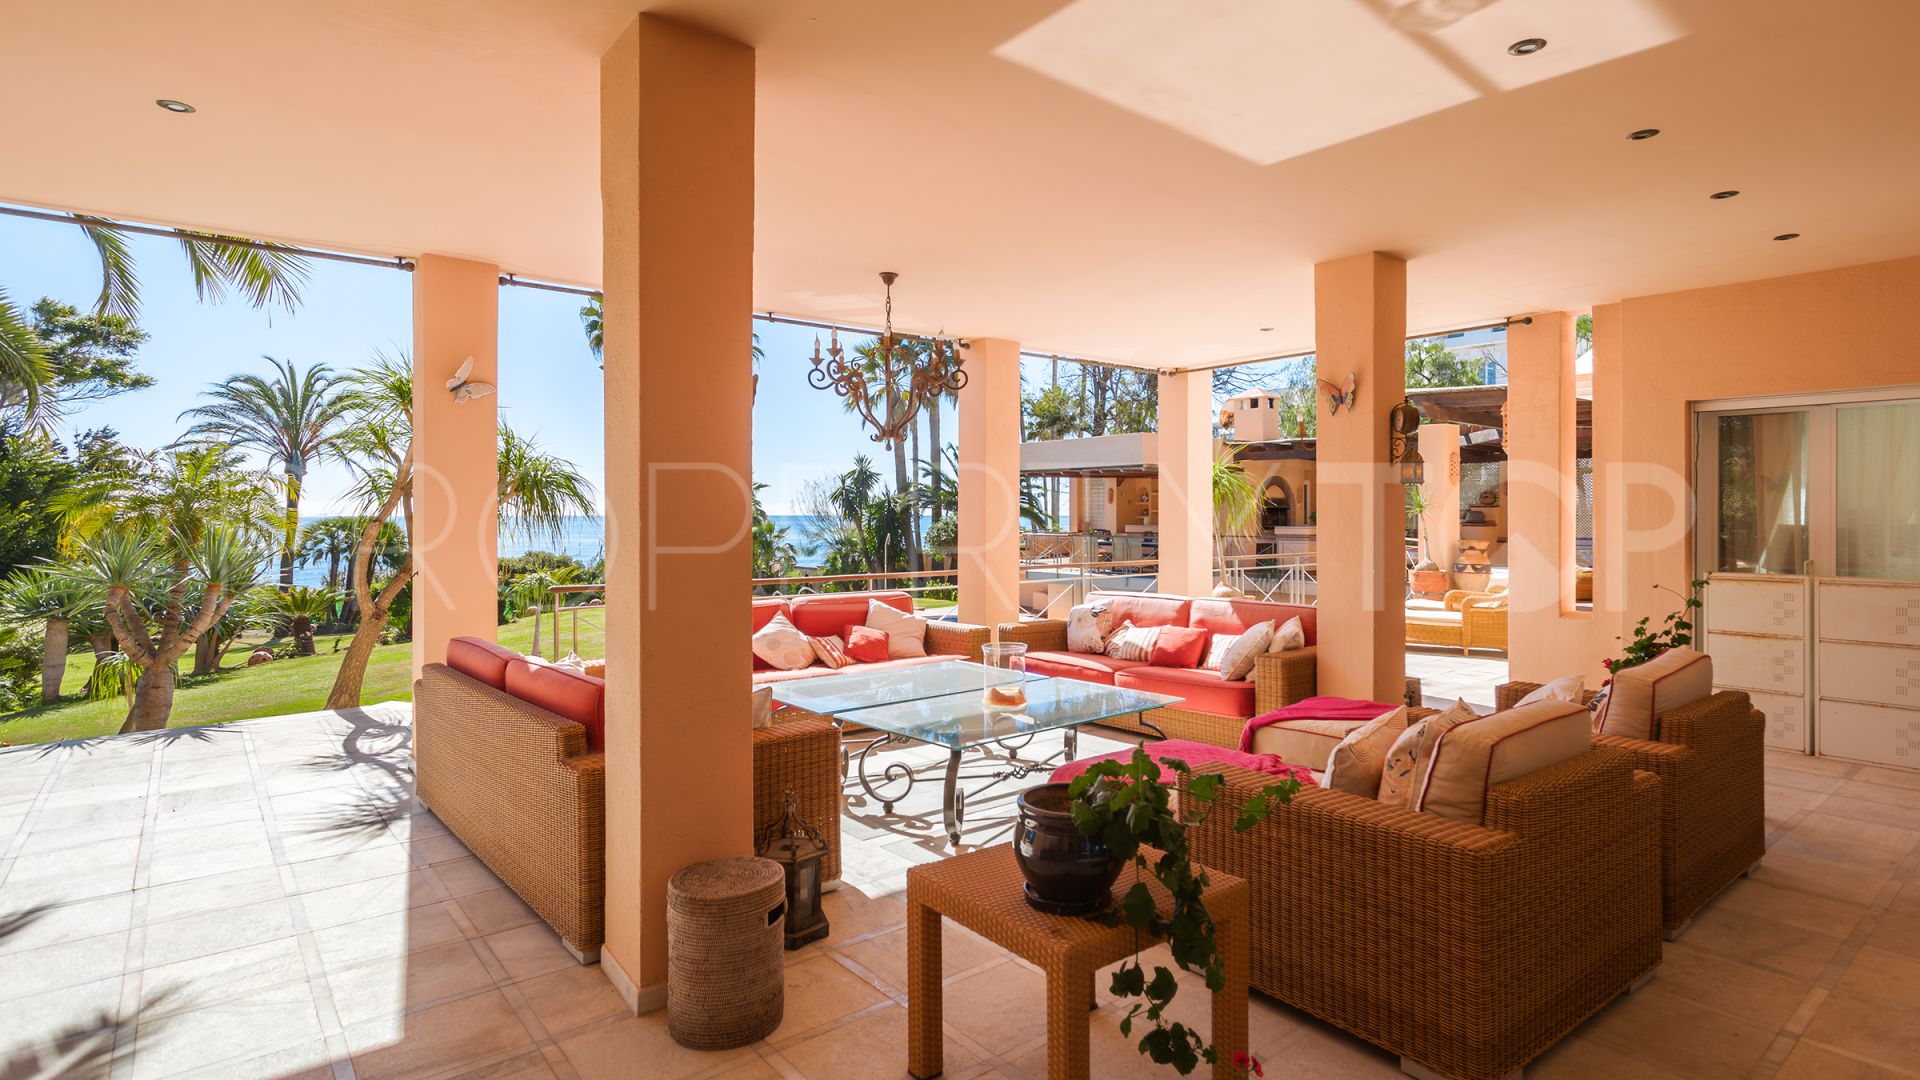 8 bedrooms villa in Hacienda Beach for sale